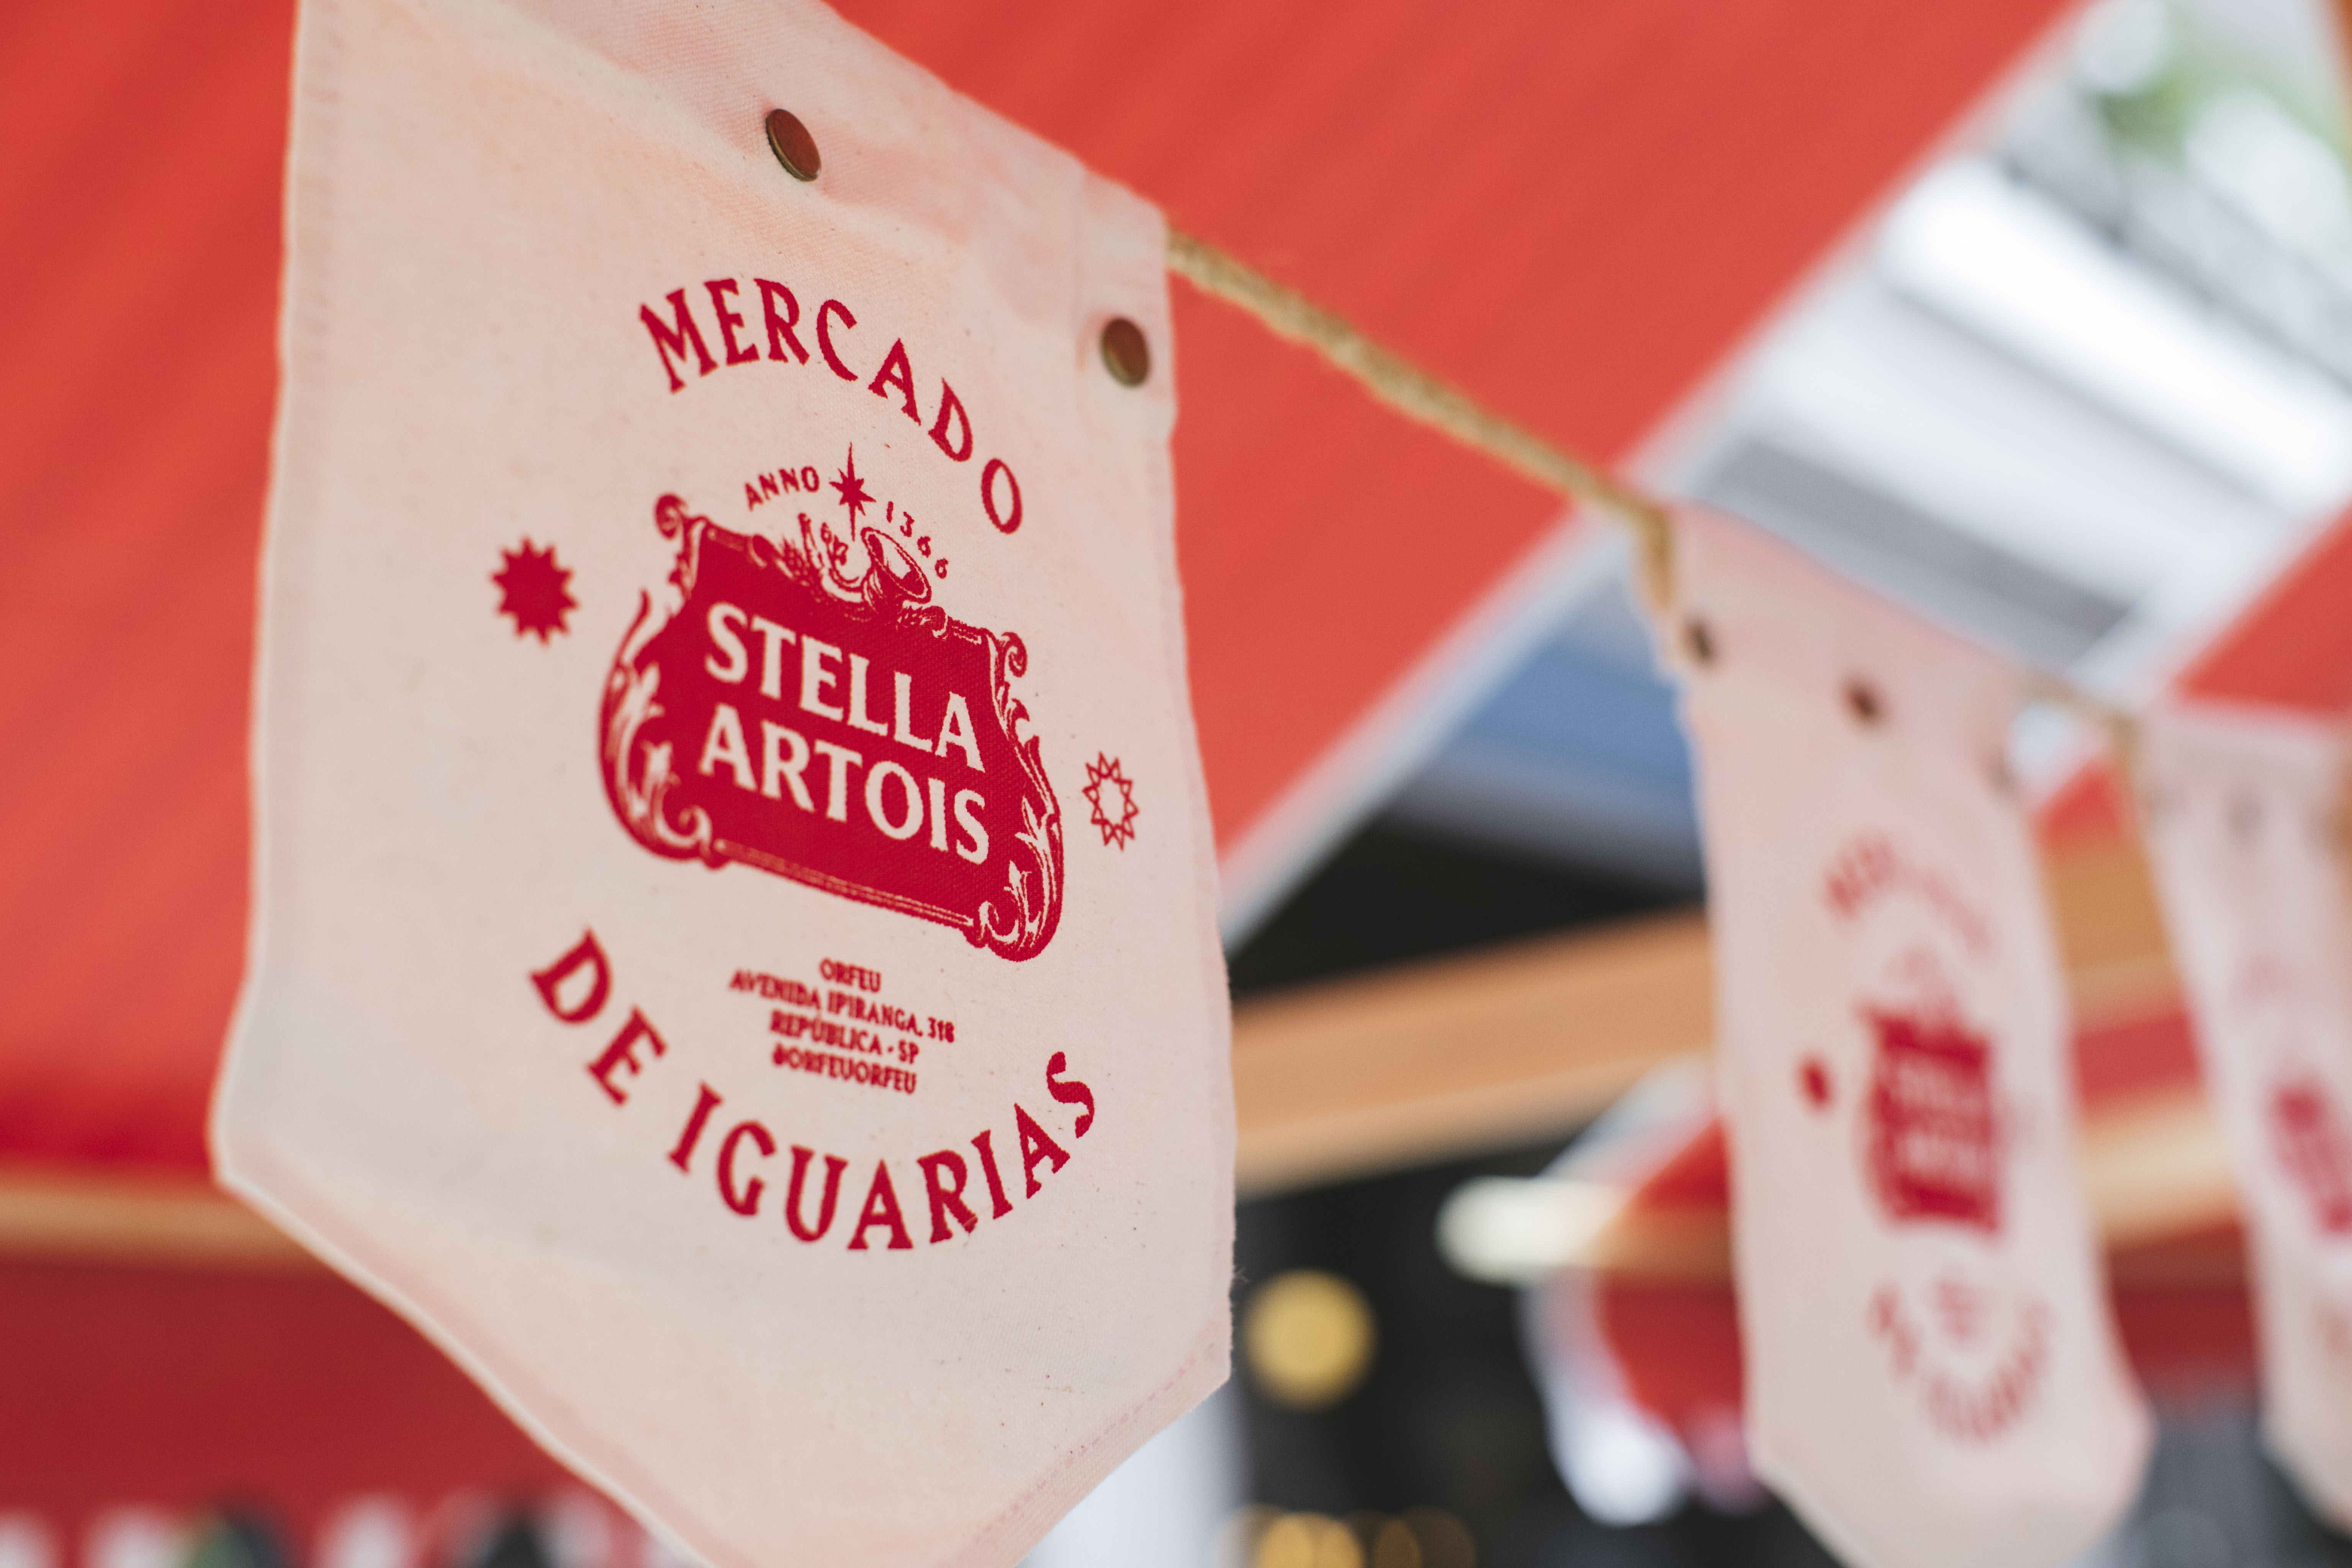 Circuito Stella Artois movimenta São Paulo com dois eventos: Mercado de Iguarias e Vira e Mexe